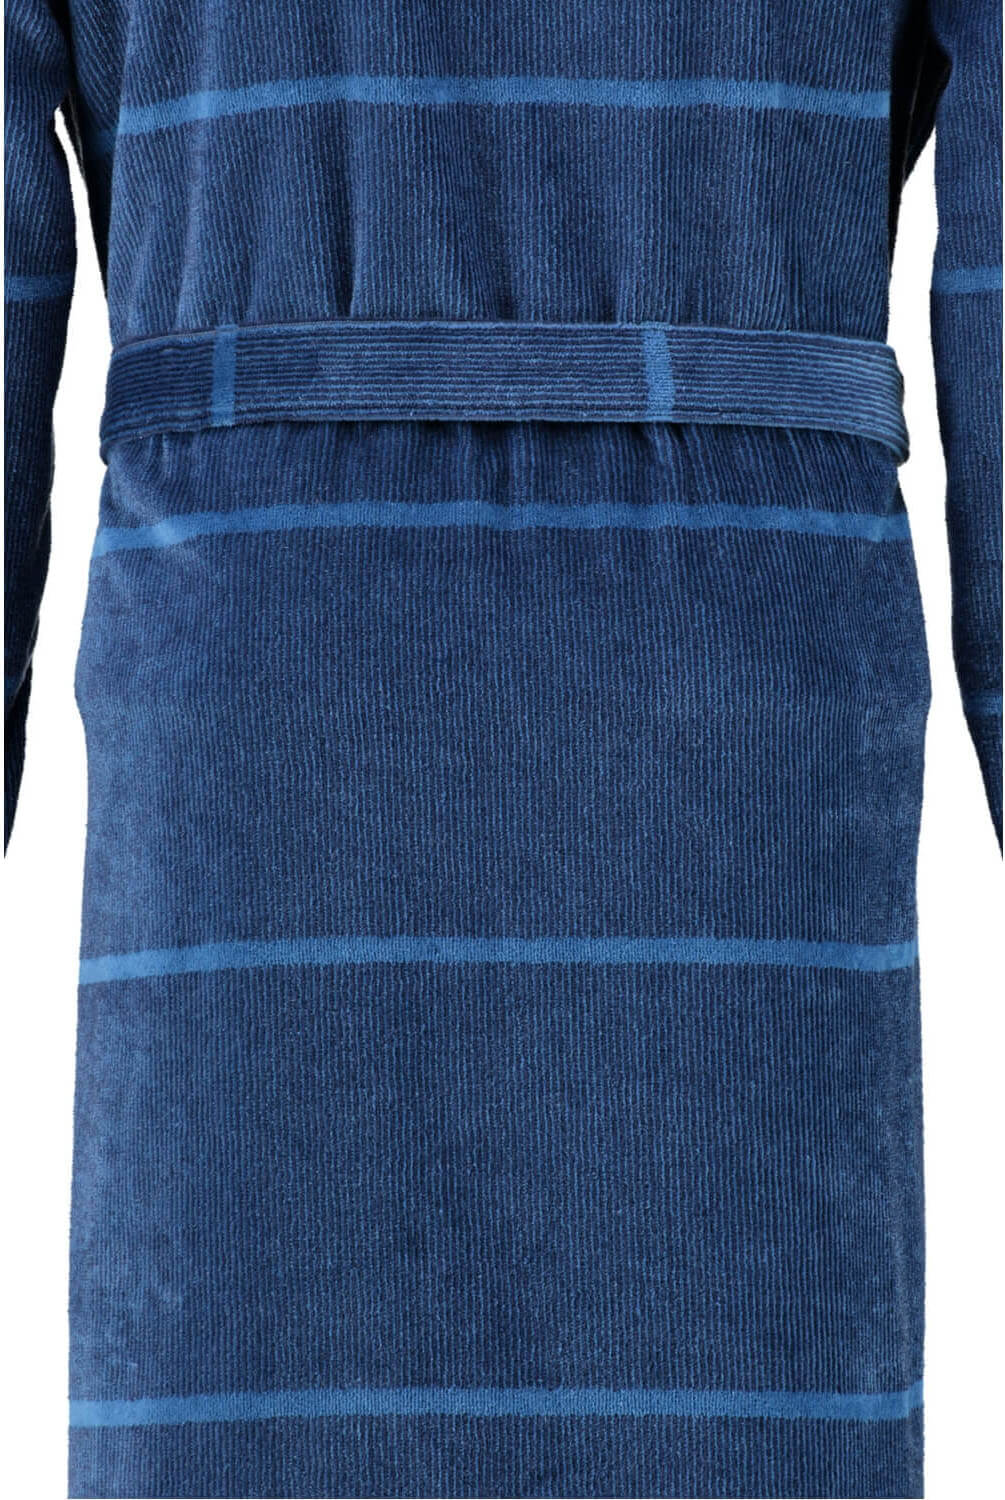 Мужской халат Cawo Kimono Blau ☞ Размер: 52